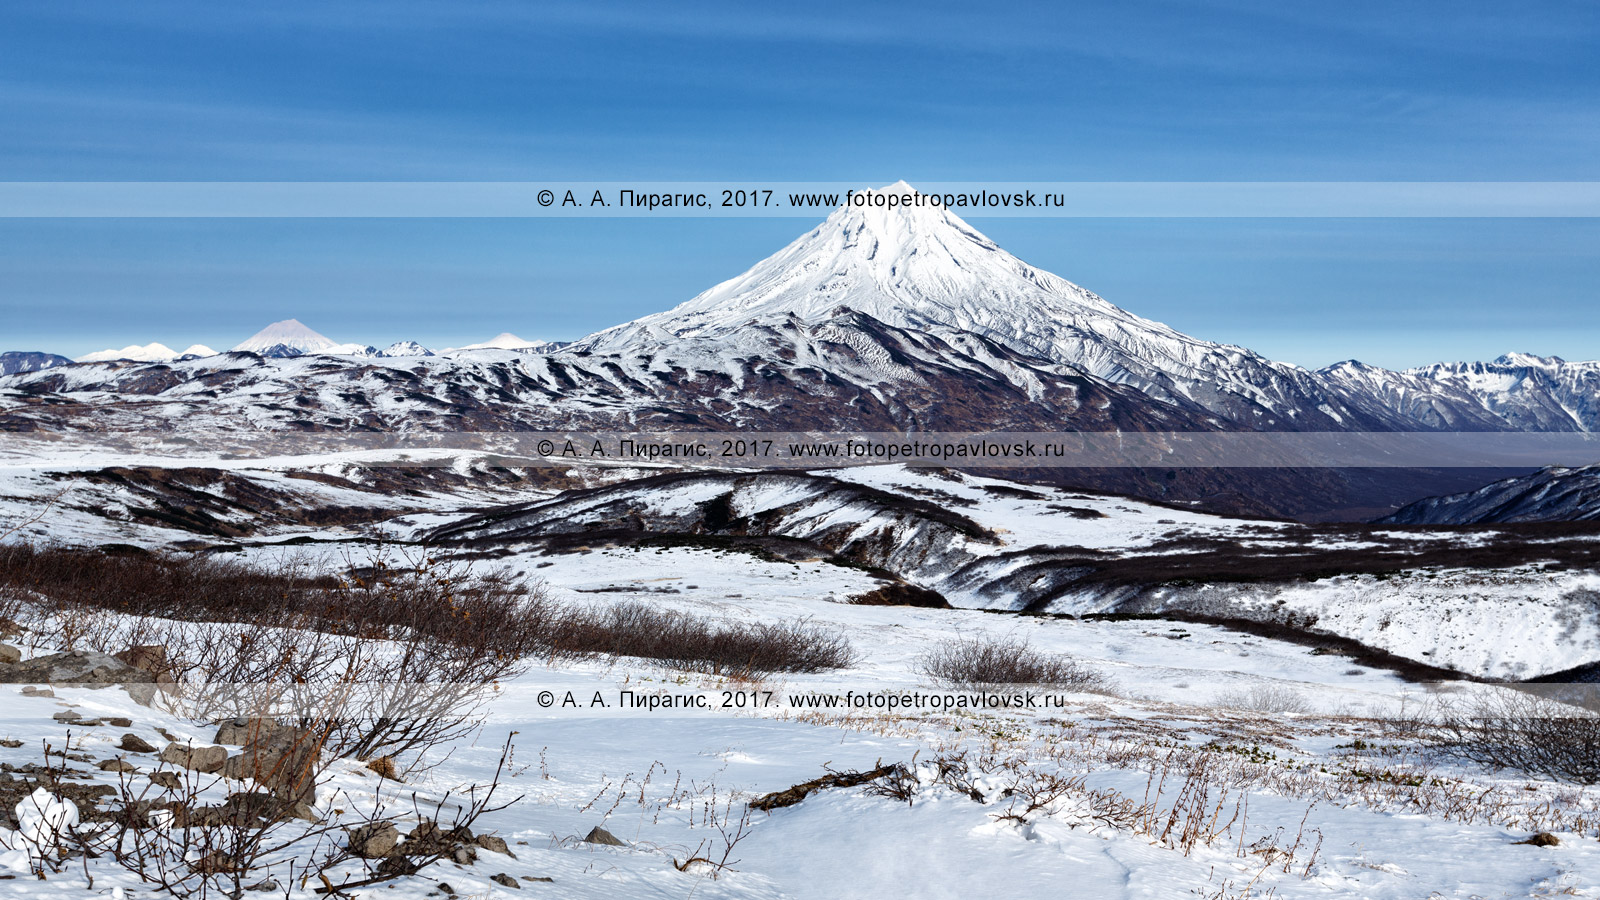 Фотография (панорама): горный пейзаж Камчатки — вулкан Вилючинская сопка (вулкан Вилючинская сопка, Вилючик, Vilyuchinsky Volcano) в снежном наряде